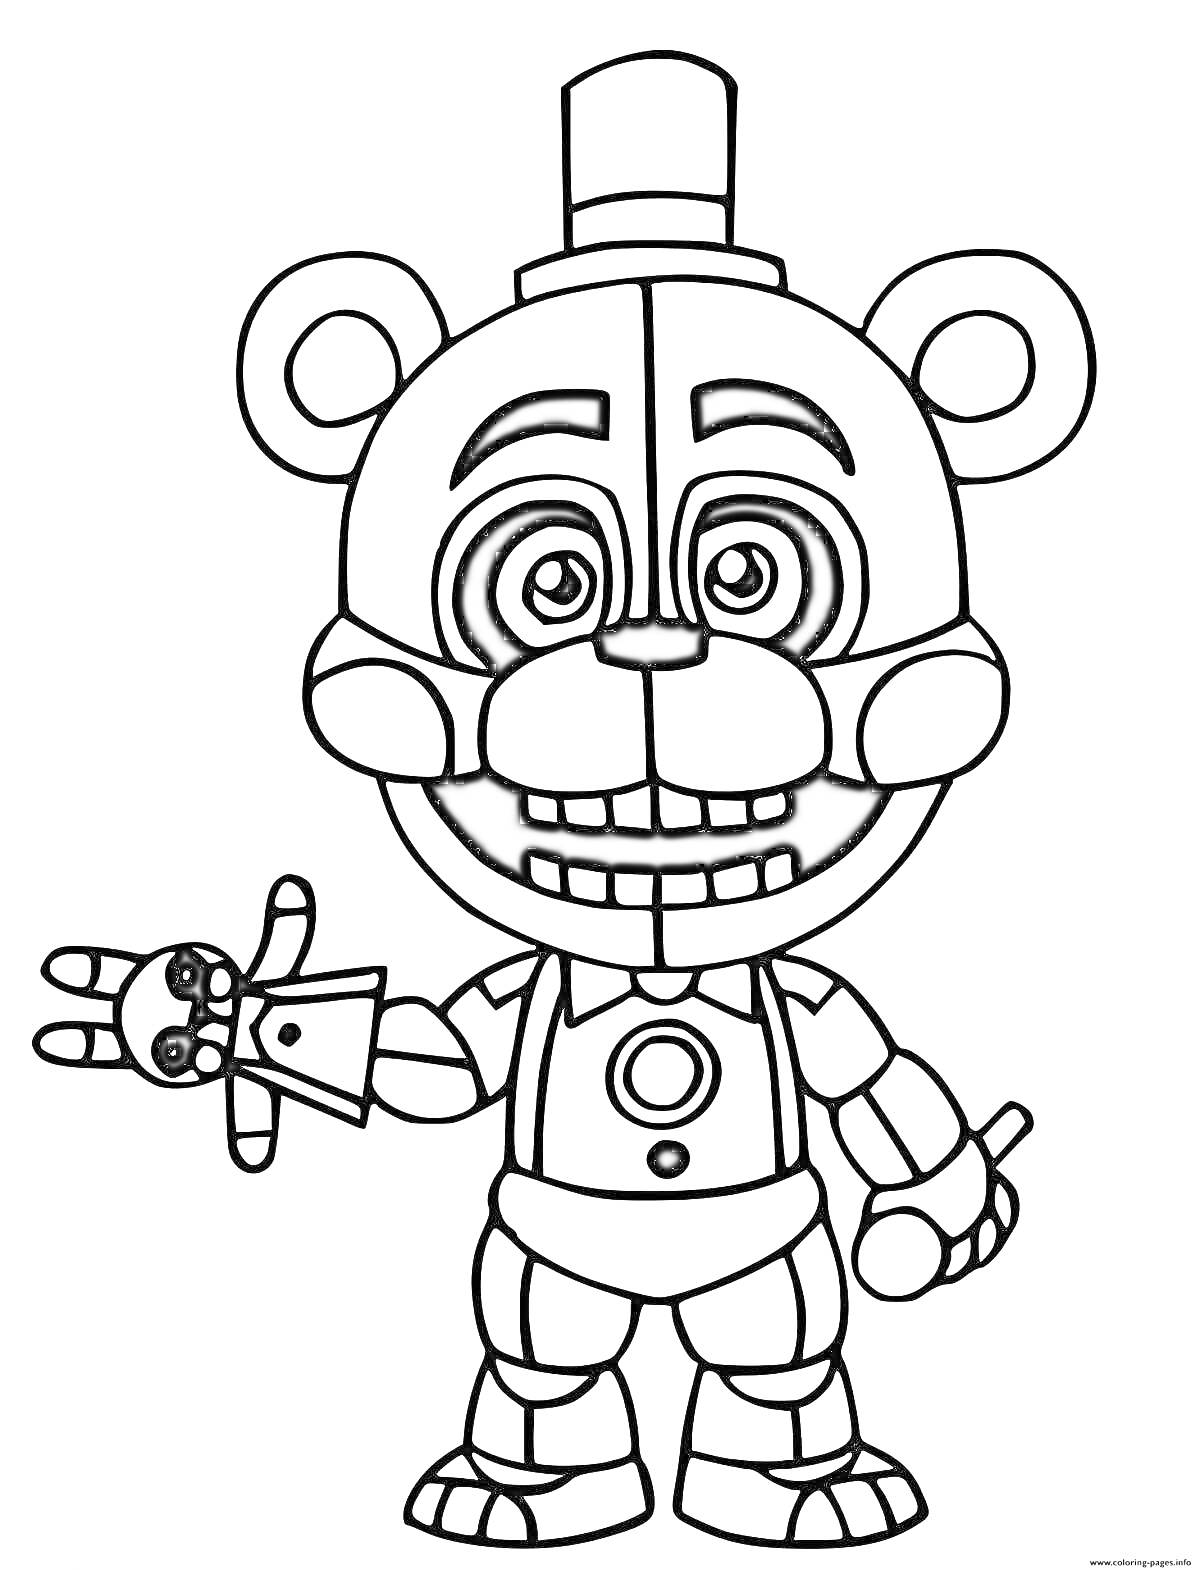 Раскраска Фредди с куклой на руке, в цилиндре, с улыбкой и кругом в центре груди